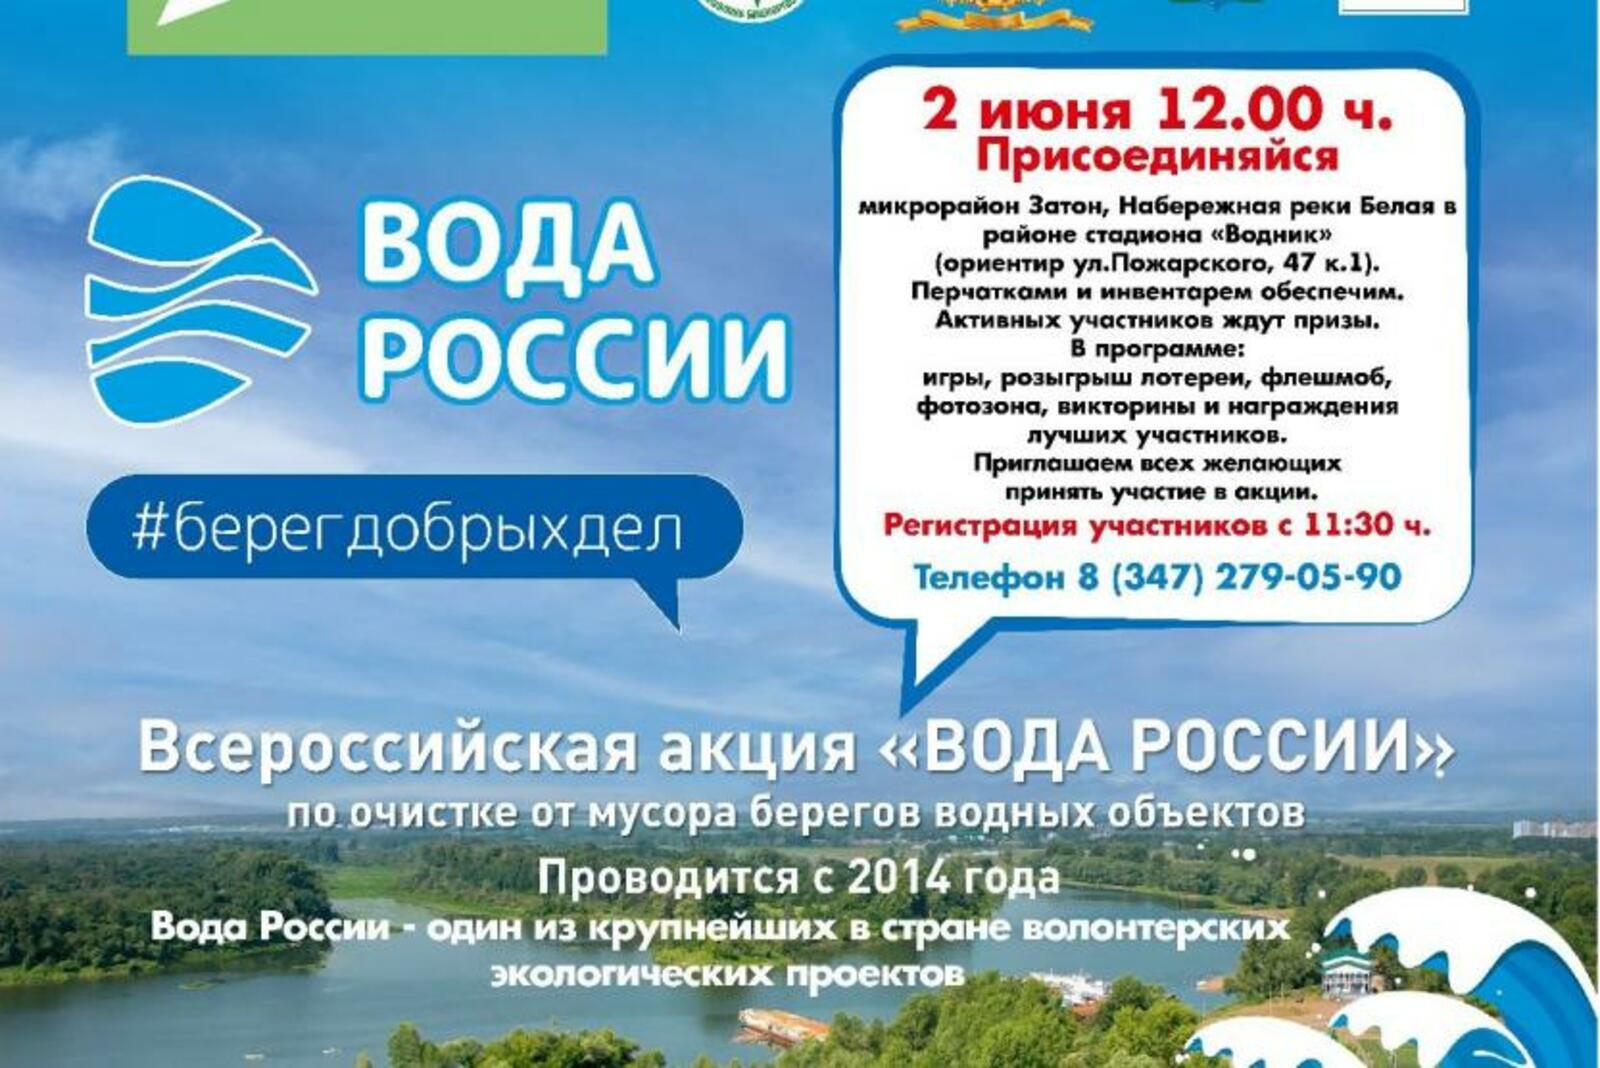 Уфимцы активно поддержат летнюю экологическую акцию «Вода России»